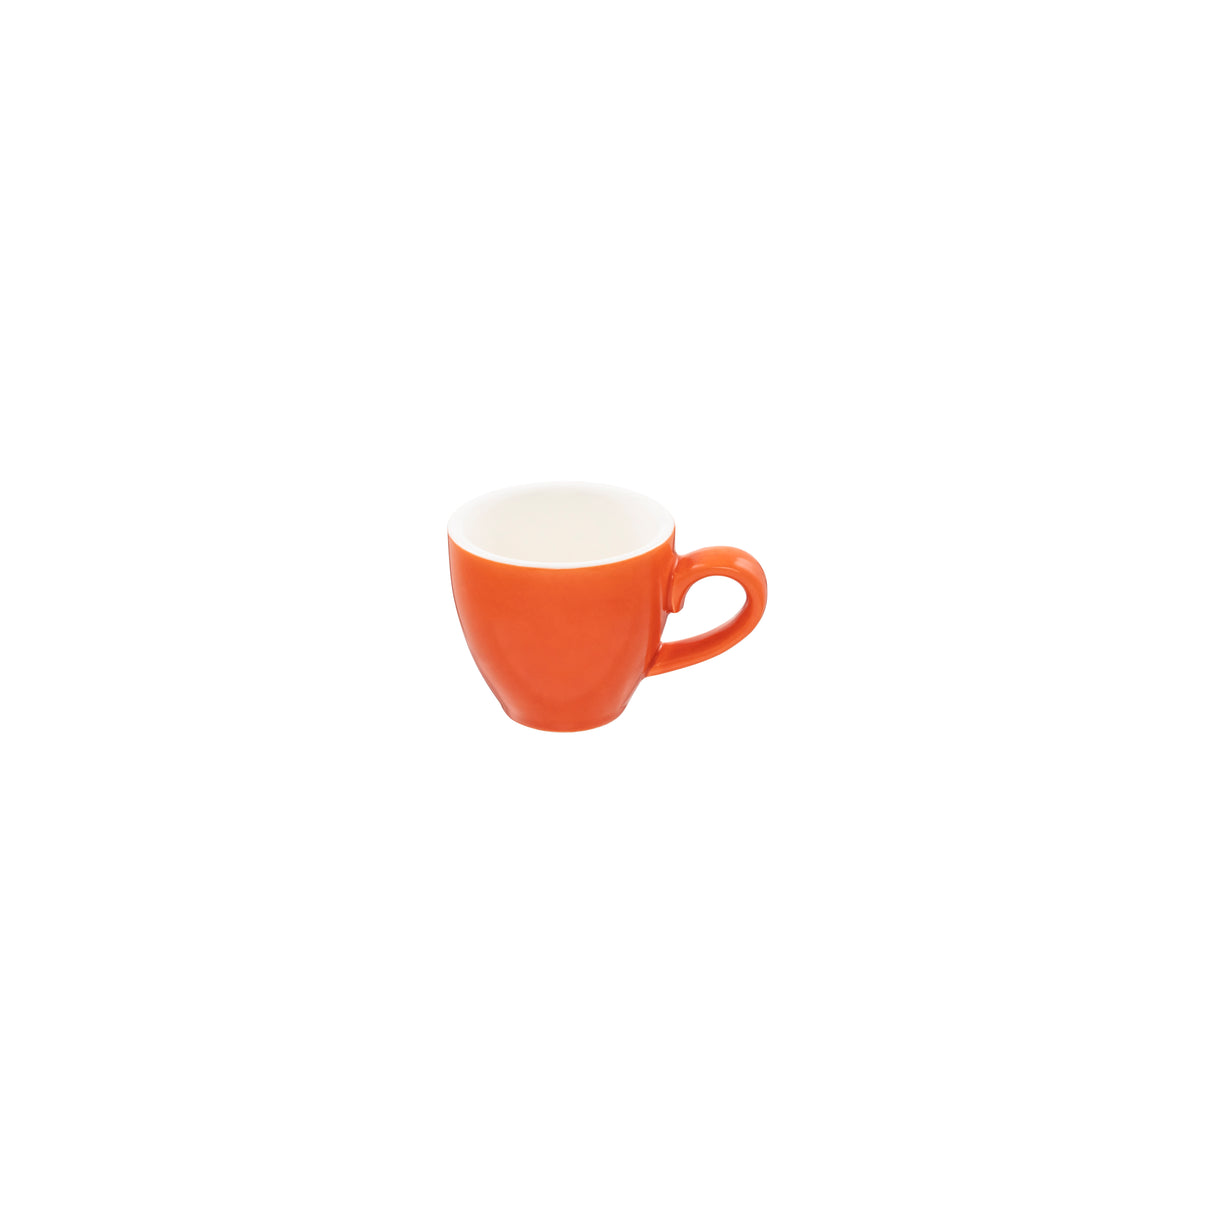 Espresso Cup - Jaffa, 75ml: Pack of 6